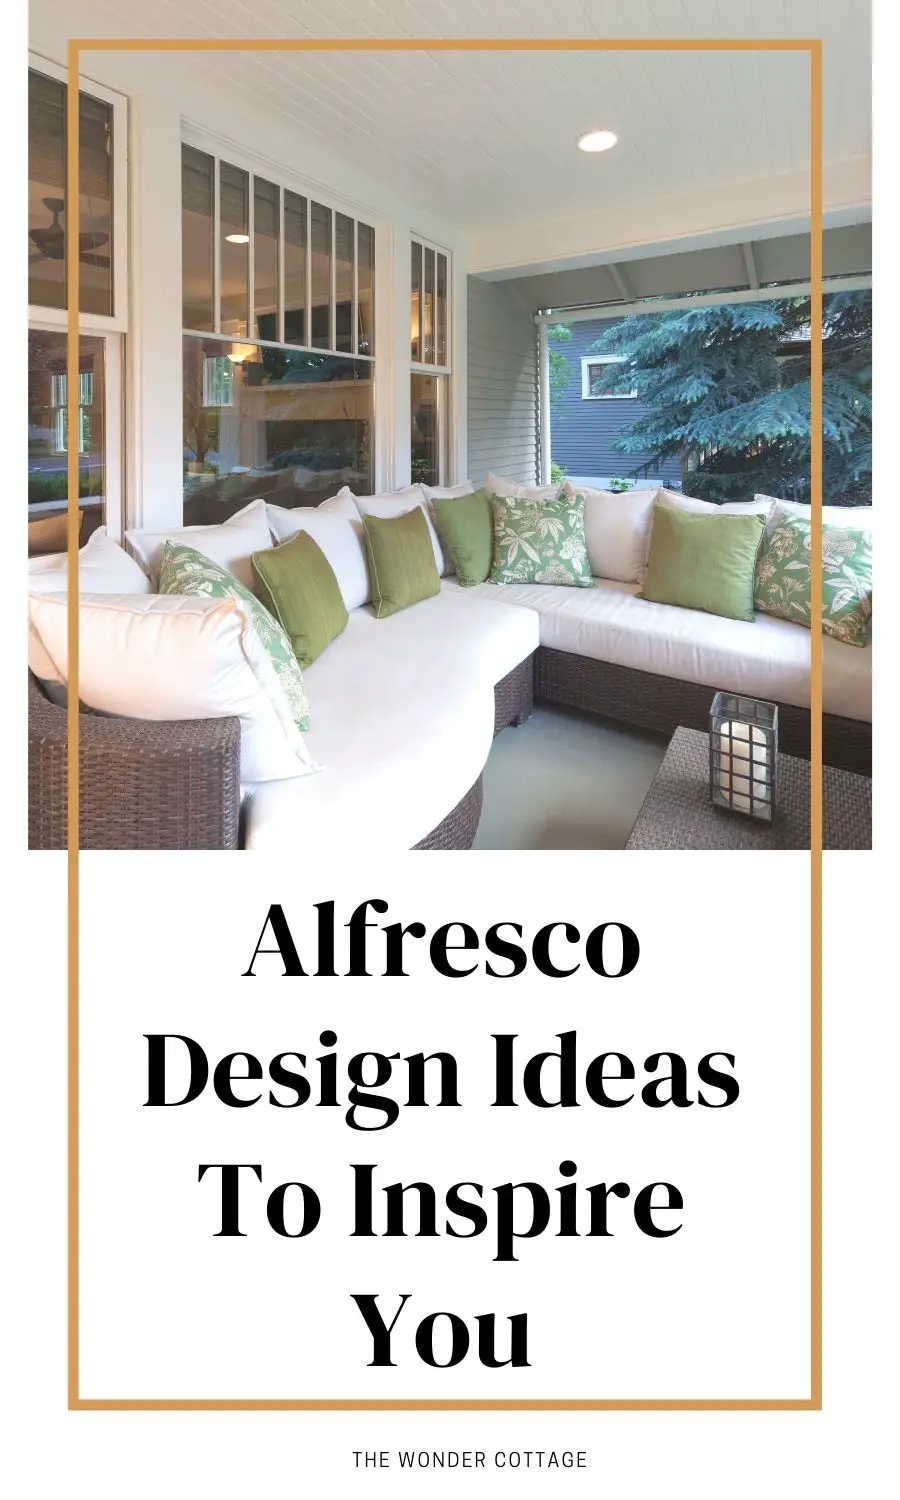 Alfresco Design Ideas To Inspire You